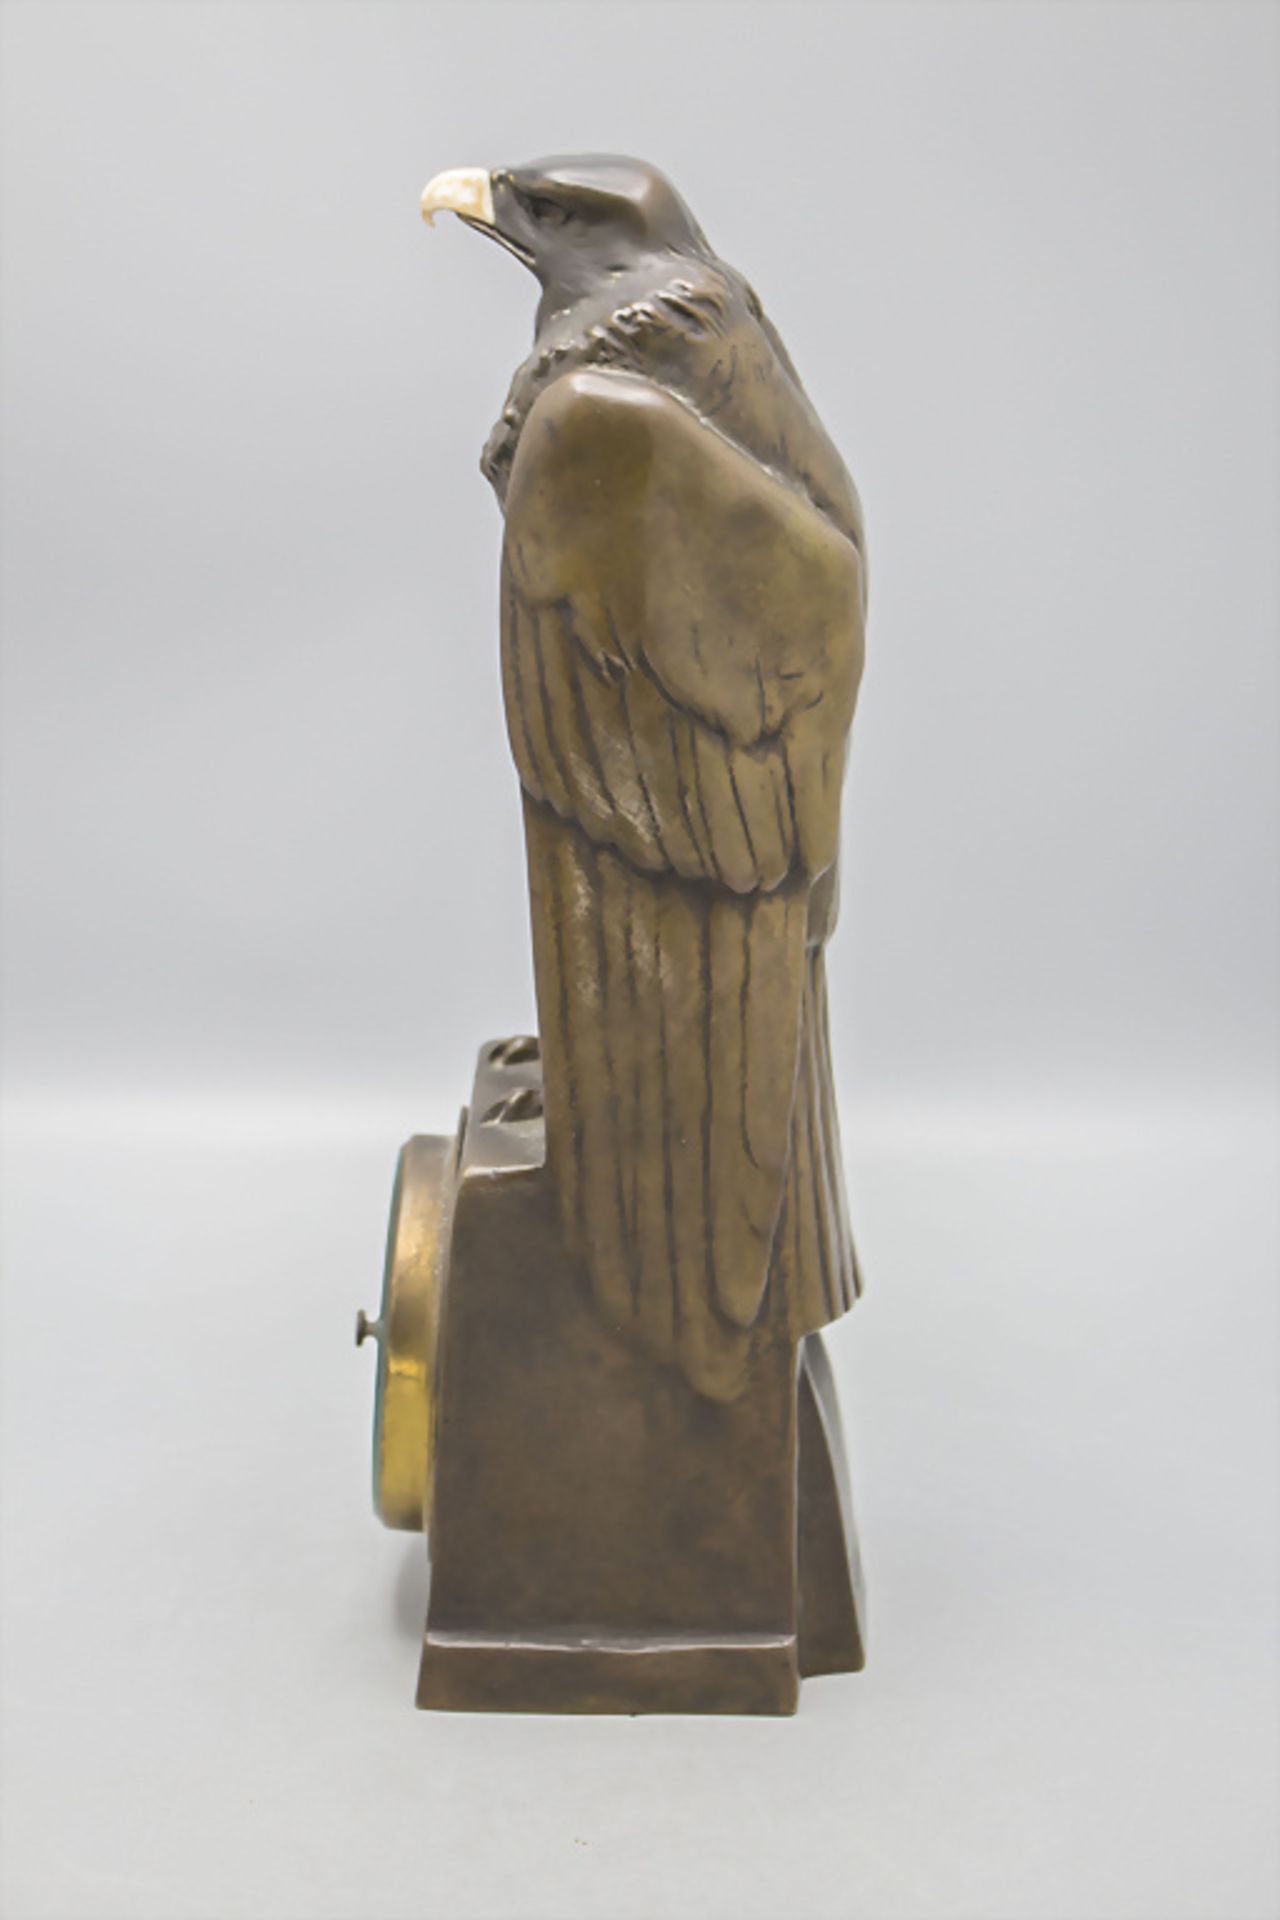 Jugendstil Bronze 'Adler mit Barometer' / An Art Nouveau bronze barometer with an eagle, Anton ... - Image 3 of 8